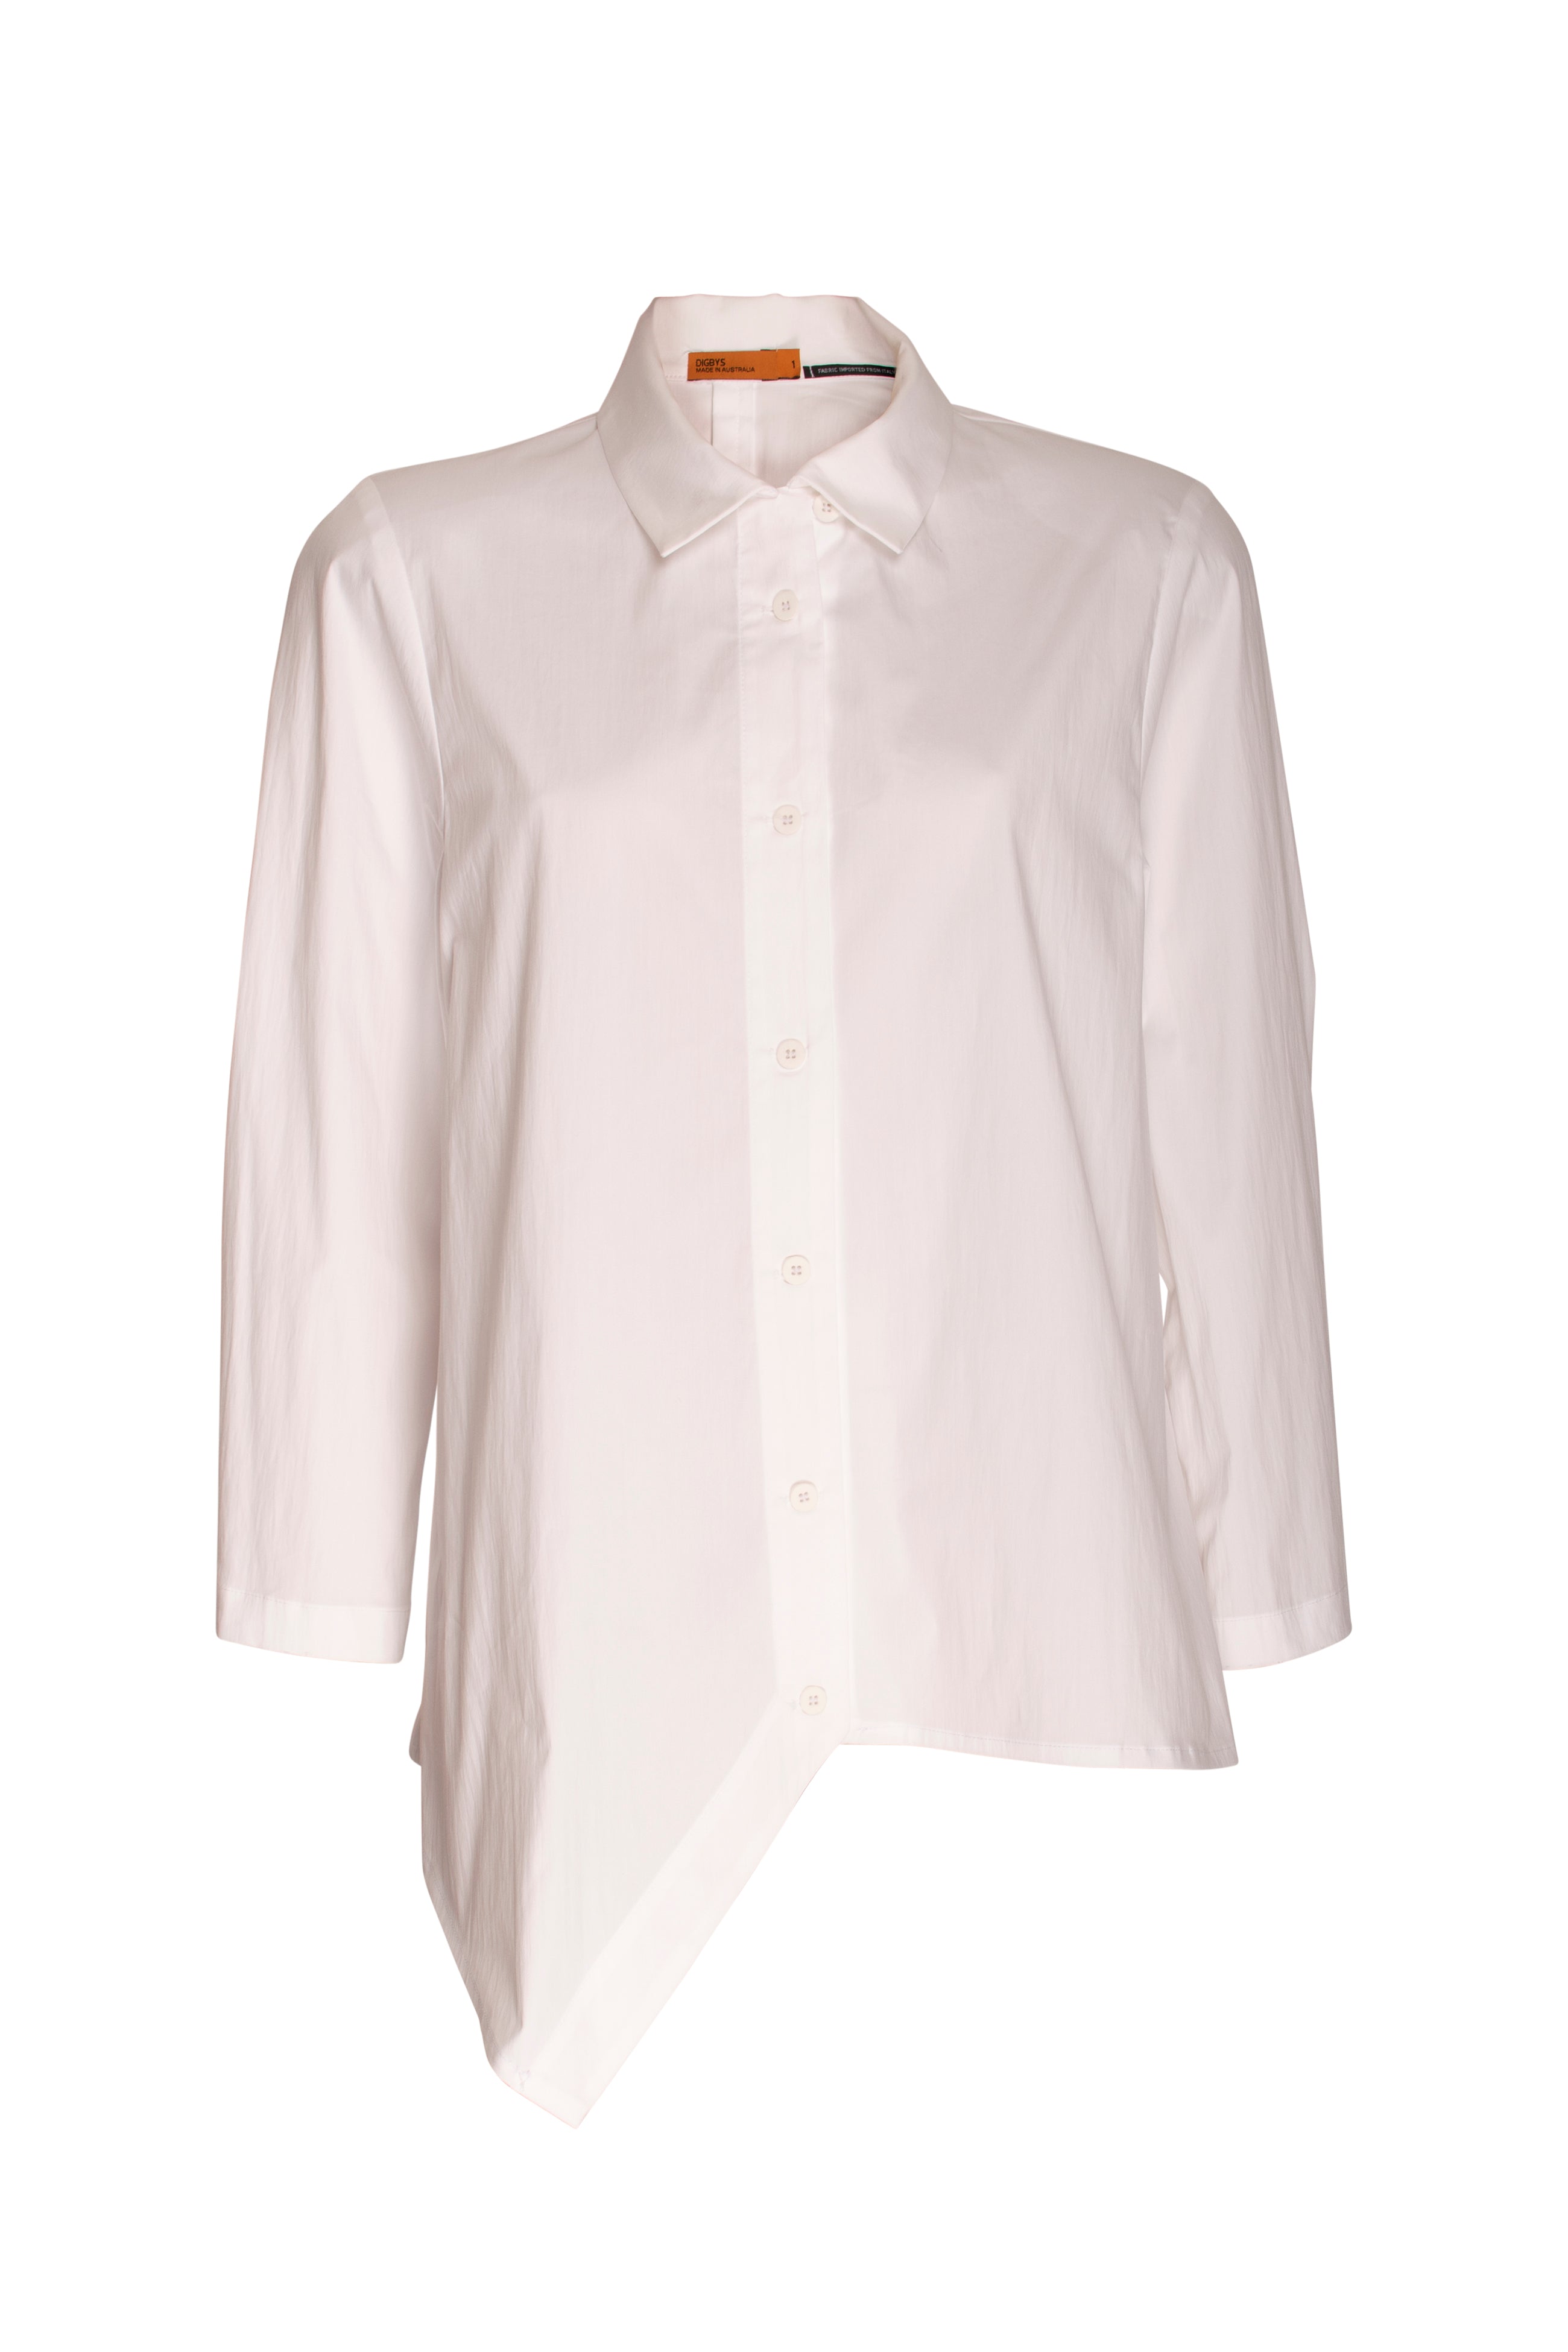 Angle Hem Shirt - White 5022